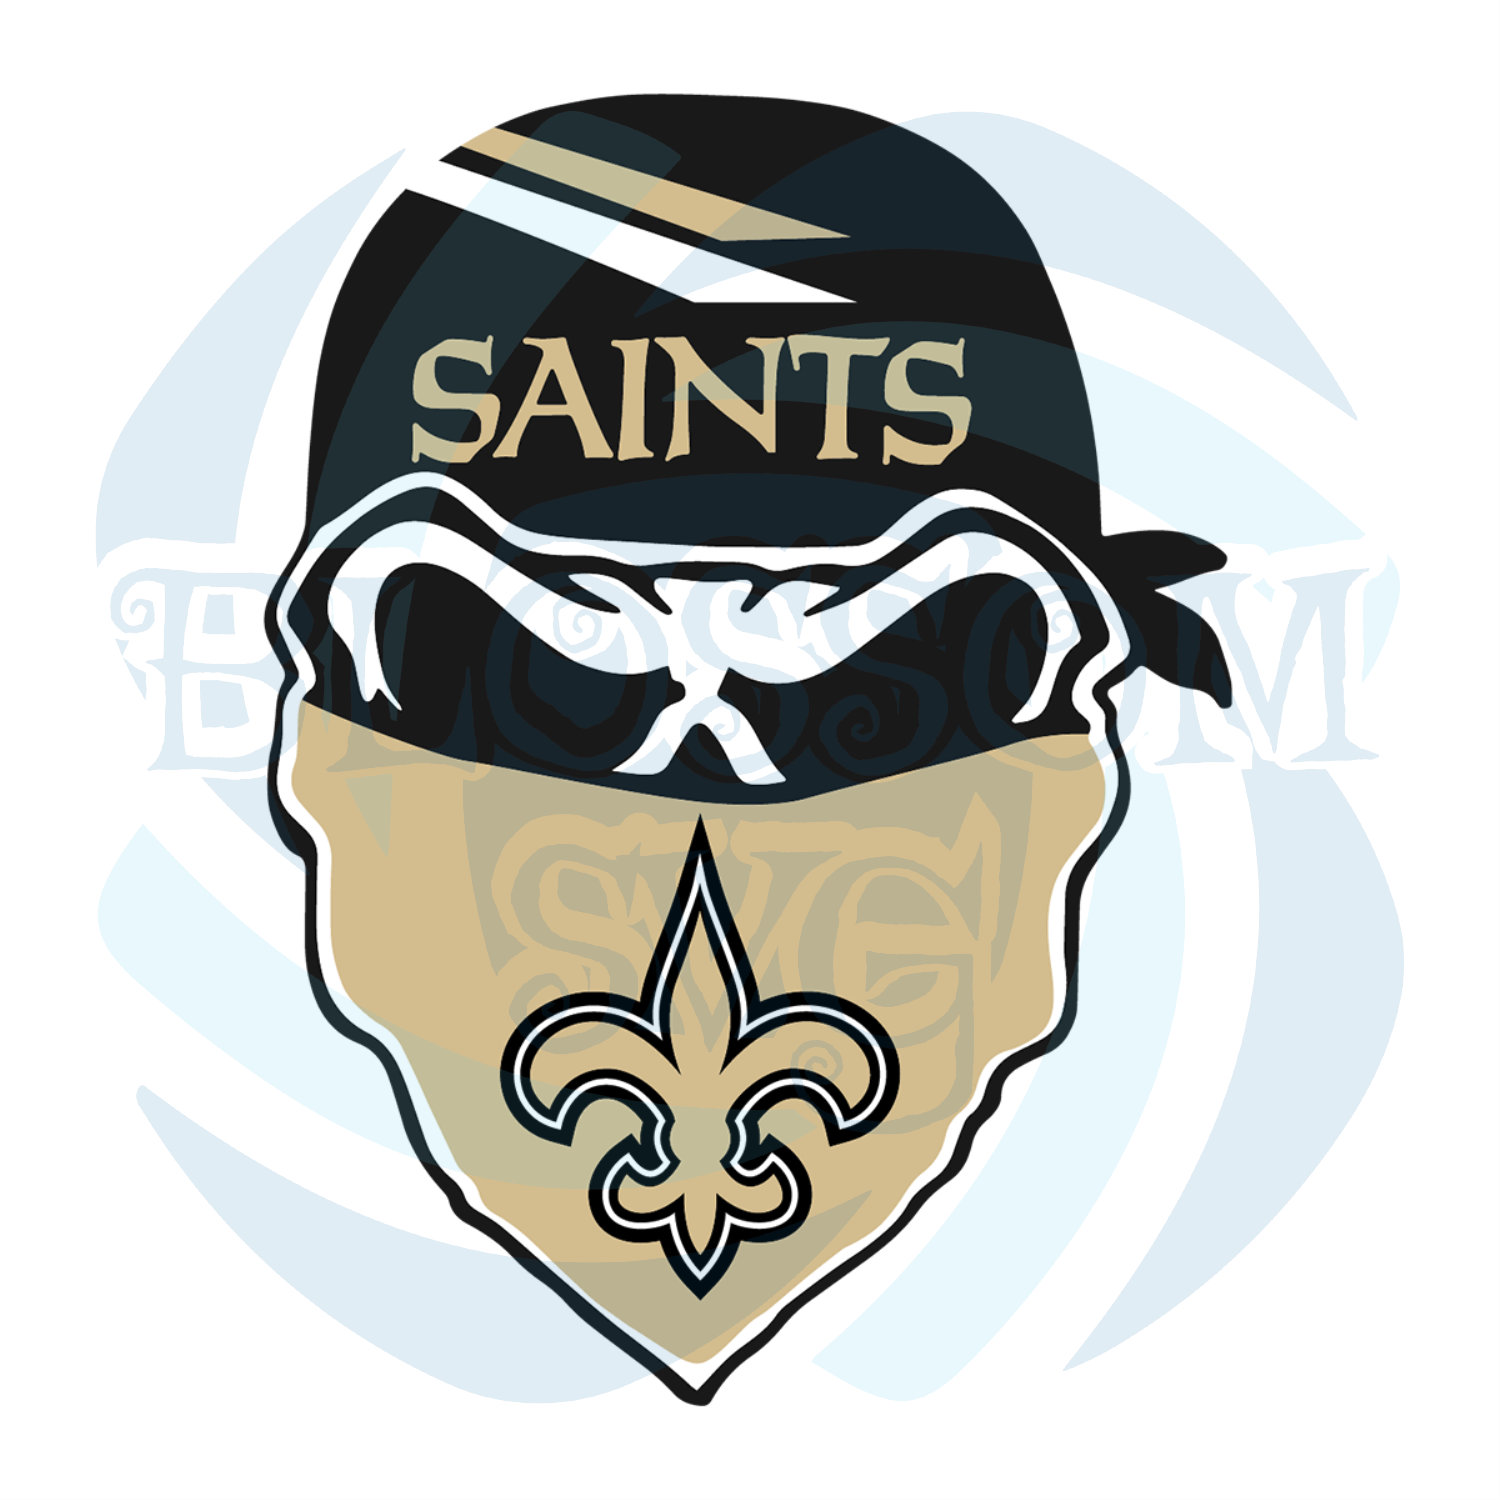 pdf Saints sublimation Saint Baseball svg png Saints Baseball svg Saint Baseball eps dxf svg